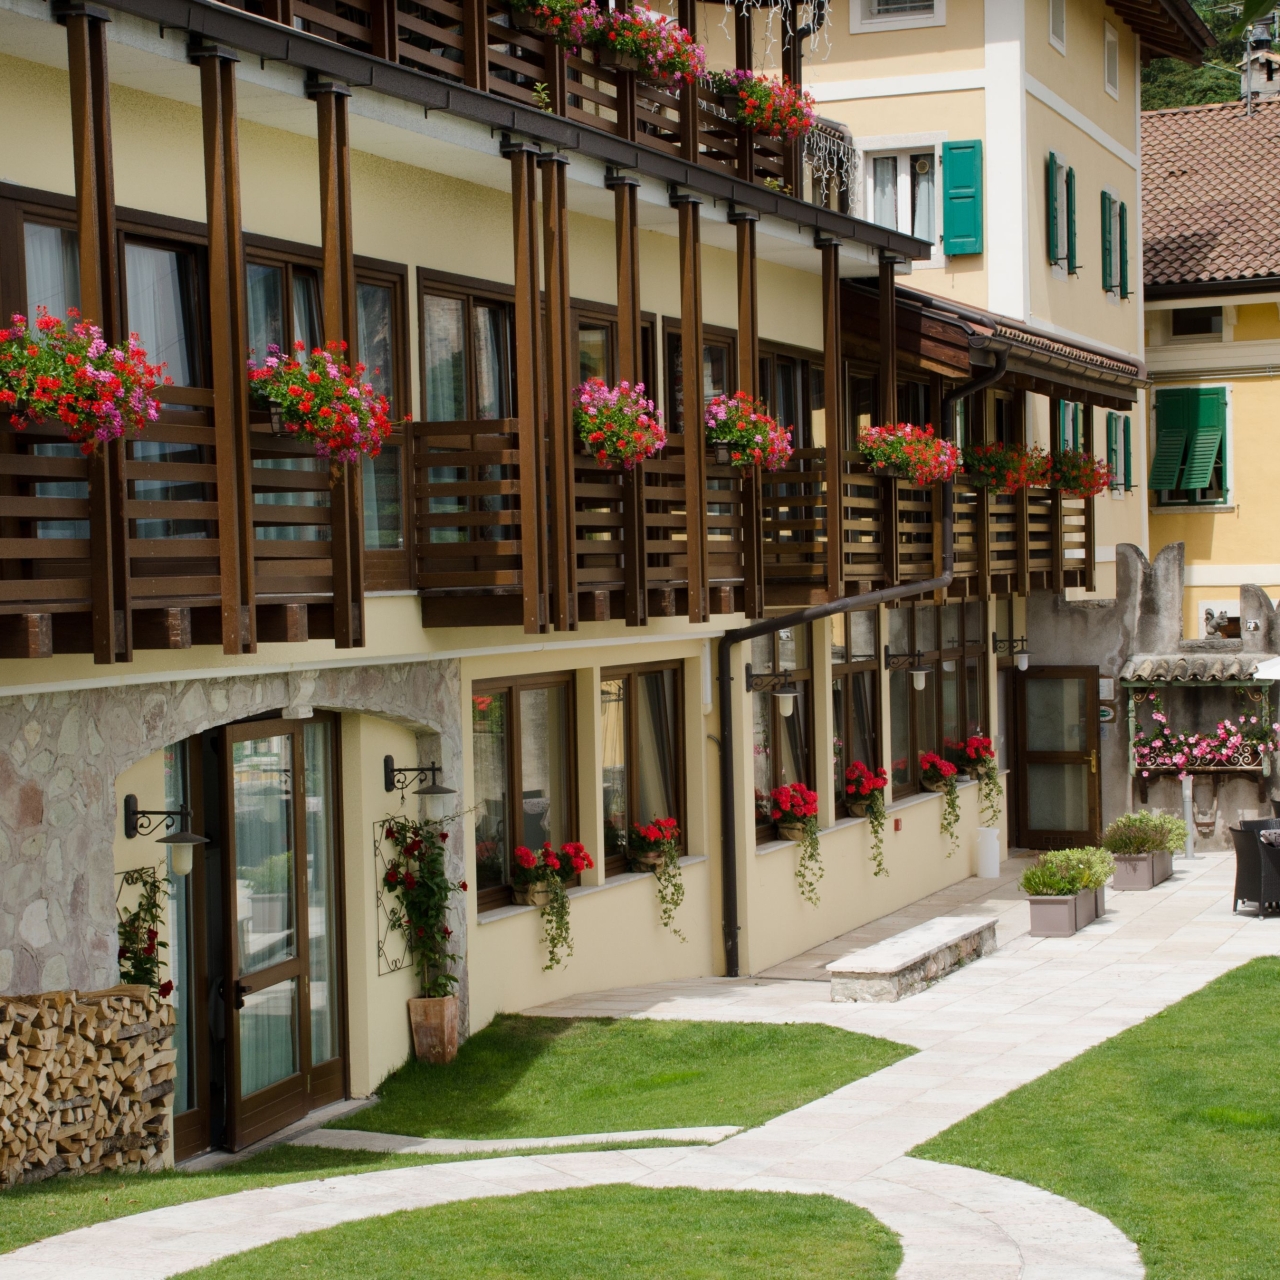 Hotel Garni San Giorgio Della Scala 3 Hrs Star Hotel In Trento Trentino Alto Adige